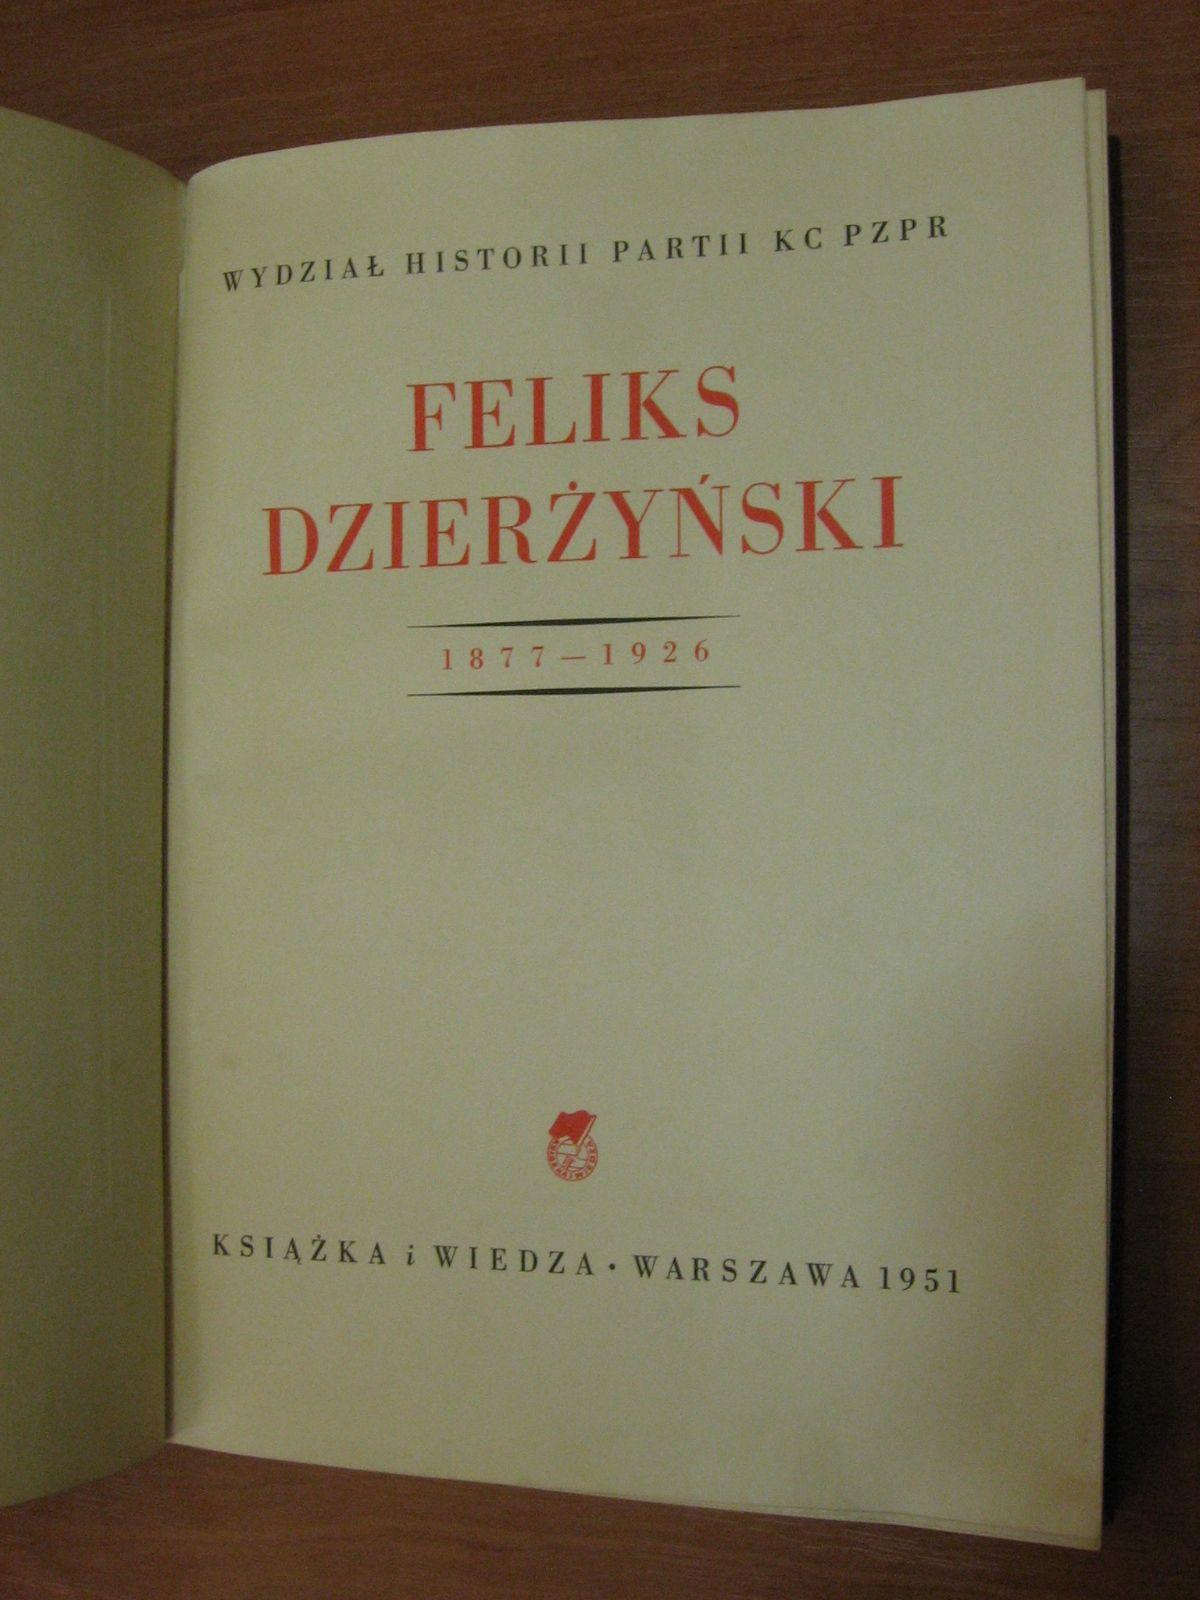 dzierzynski2